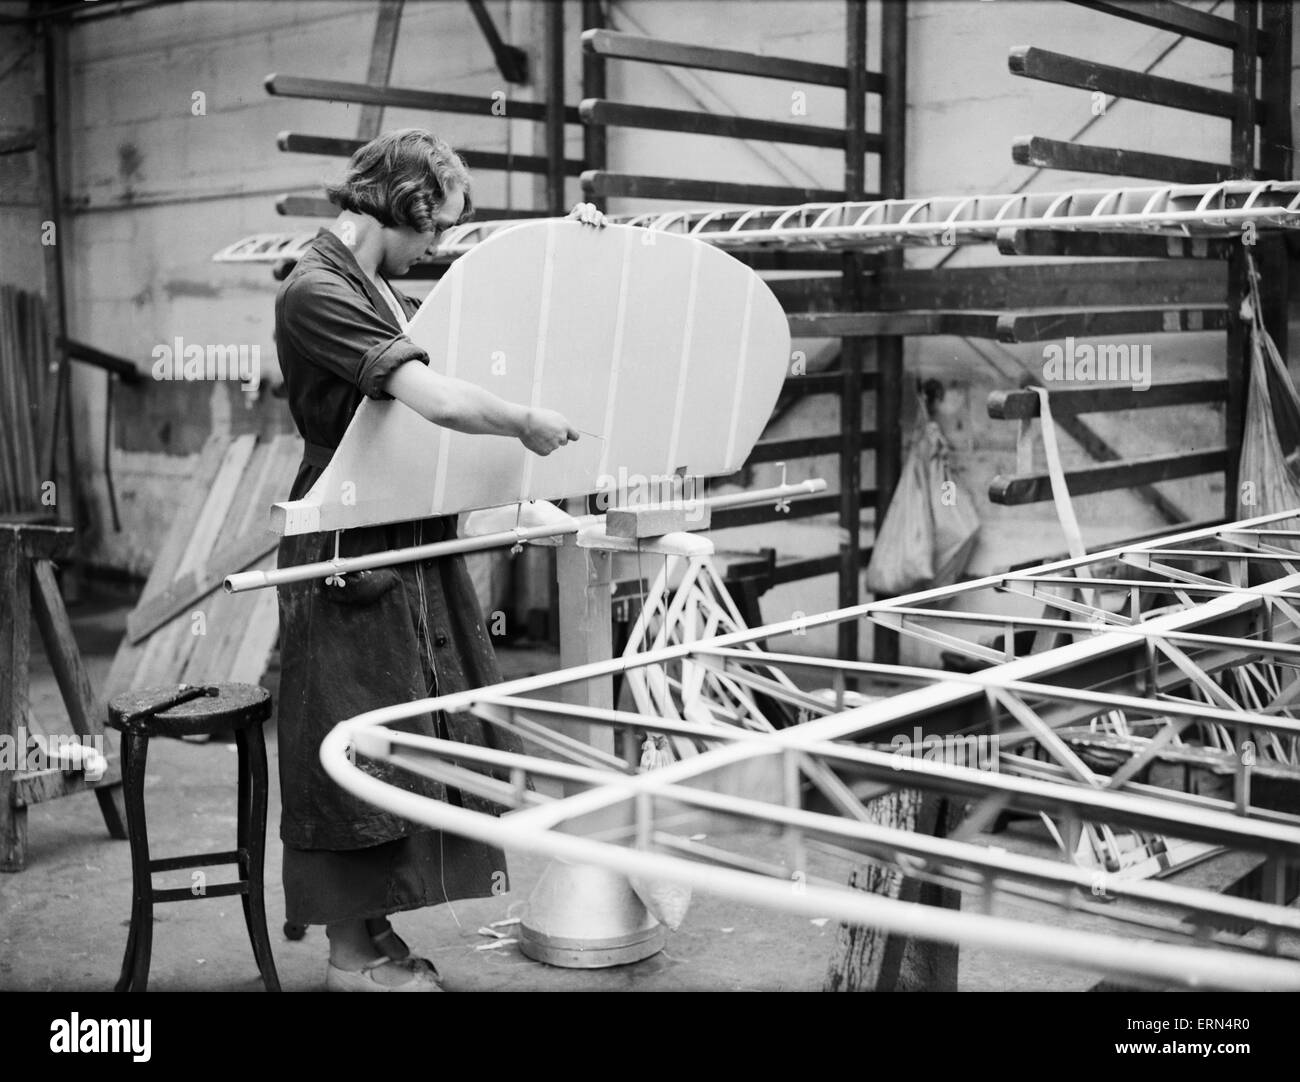 Frau passt das Ruder beim Bau des Flugzeugs Meilen 3 Falcon Philips und Powis werkseitig auf Woodley Flugplatz, 2. April 1934 lesen Stockfoto